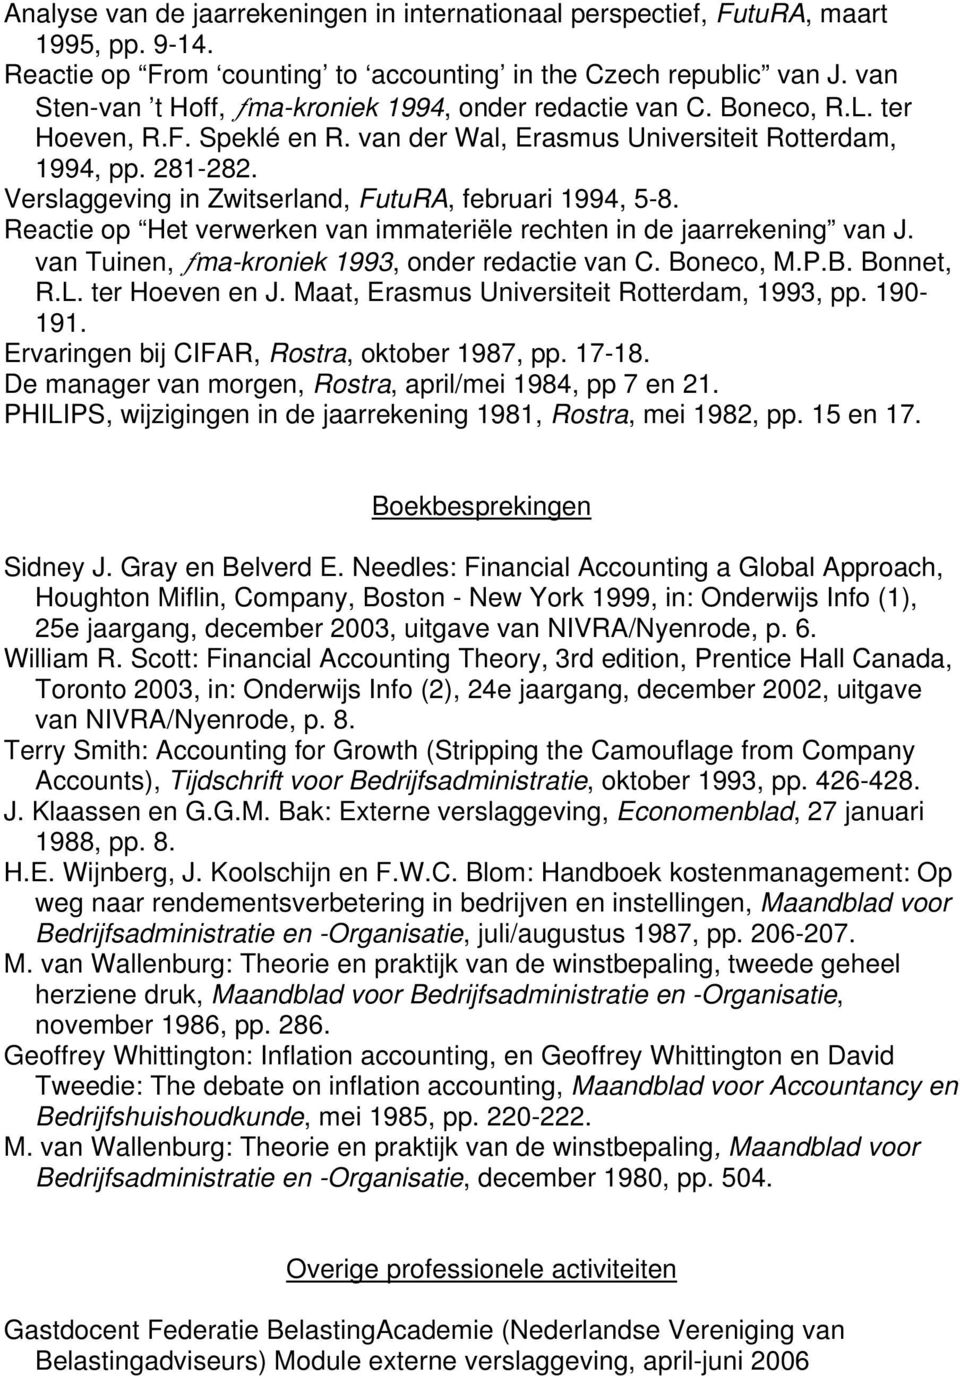 Verslaggeving in Zwitserland, FutuRA, februari 1994, 5-8. Reactie op Het verwerken van immateriële rechten in de jaarrekening van J. van Tuinen, ƒma-kroniek 1993, onder redactie van C. Boneco, M.P.B. Bonnet, R.